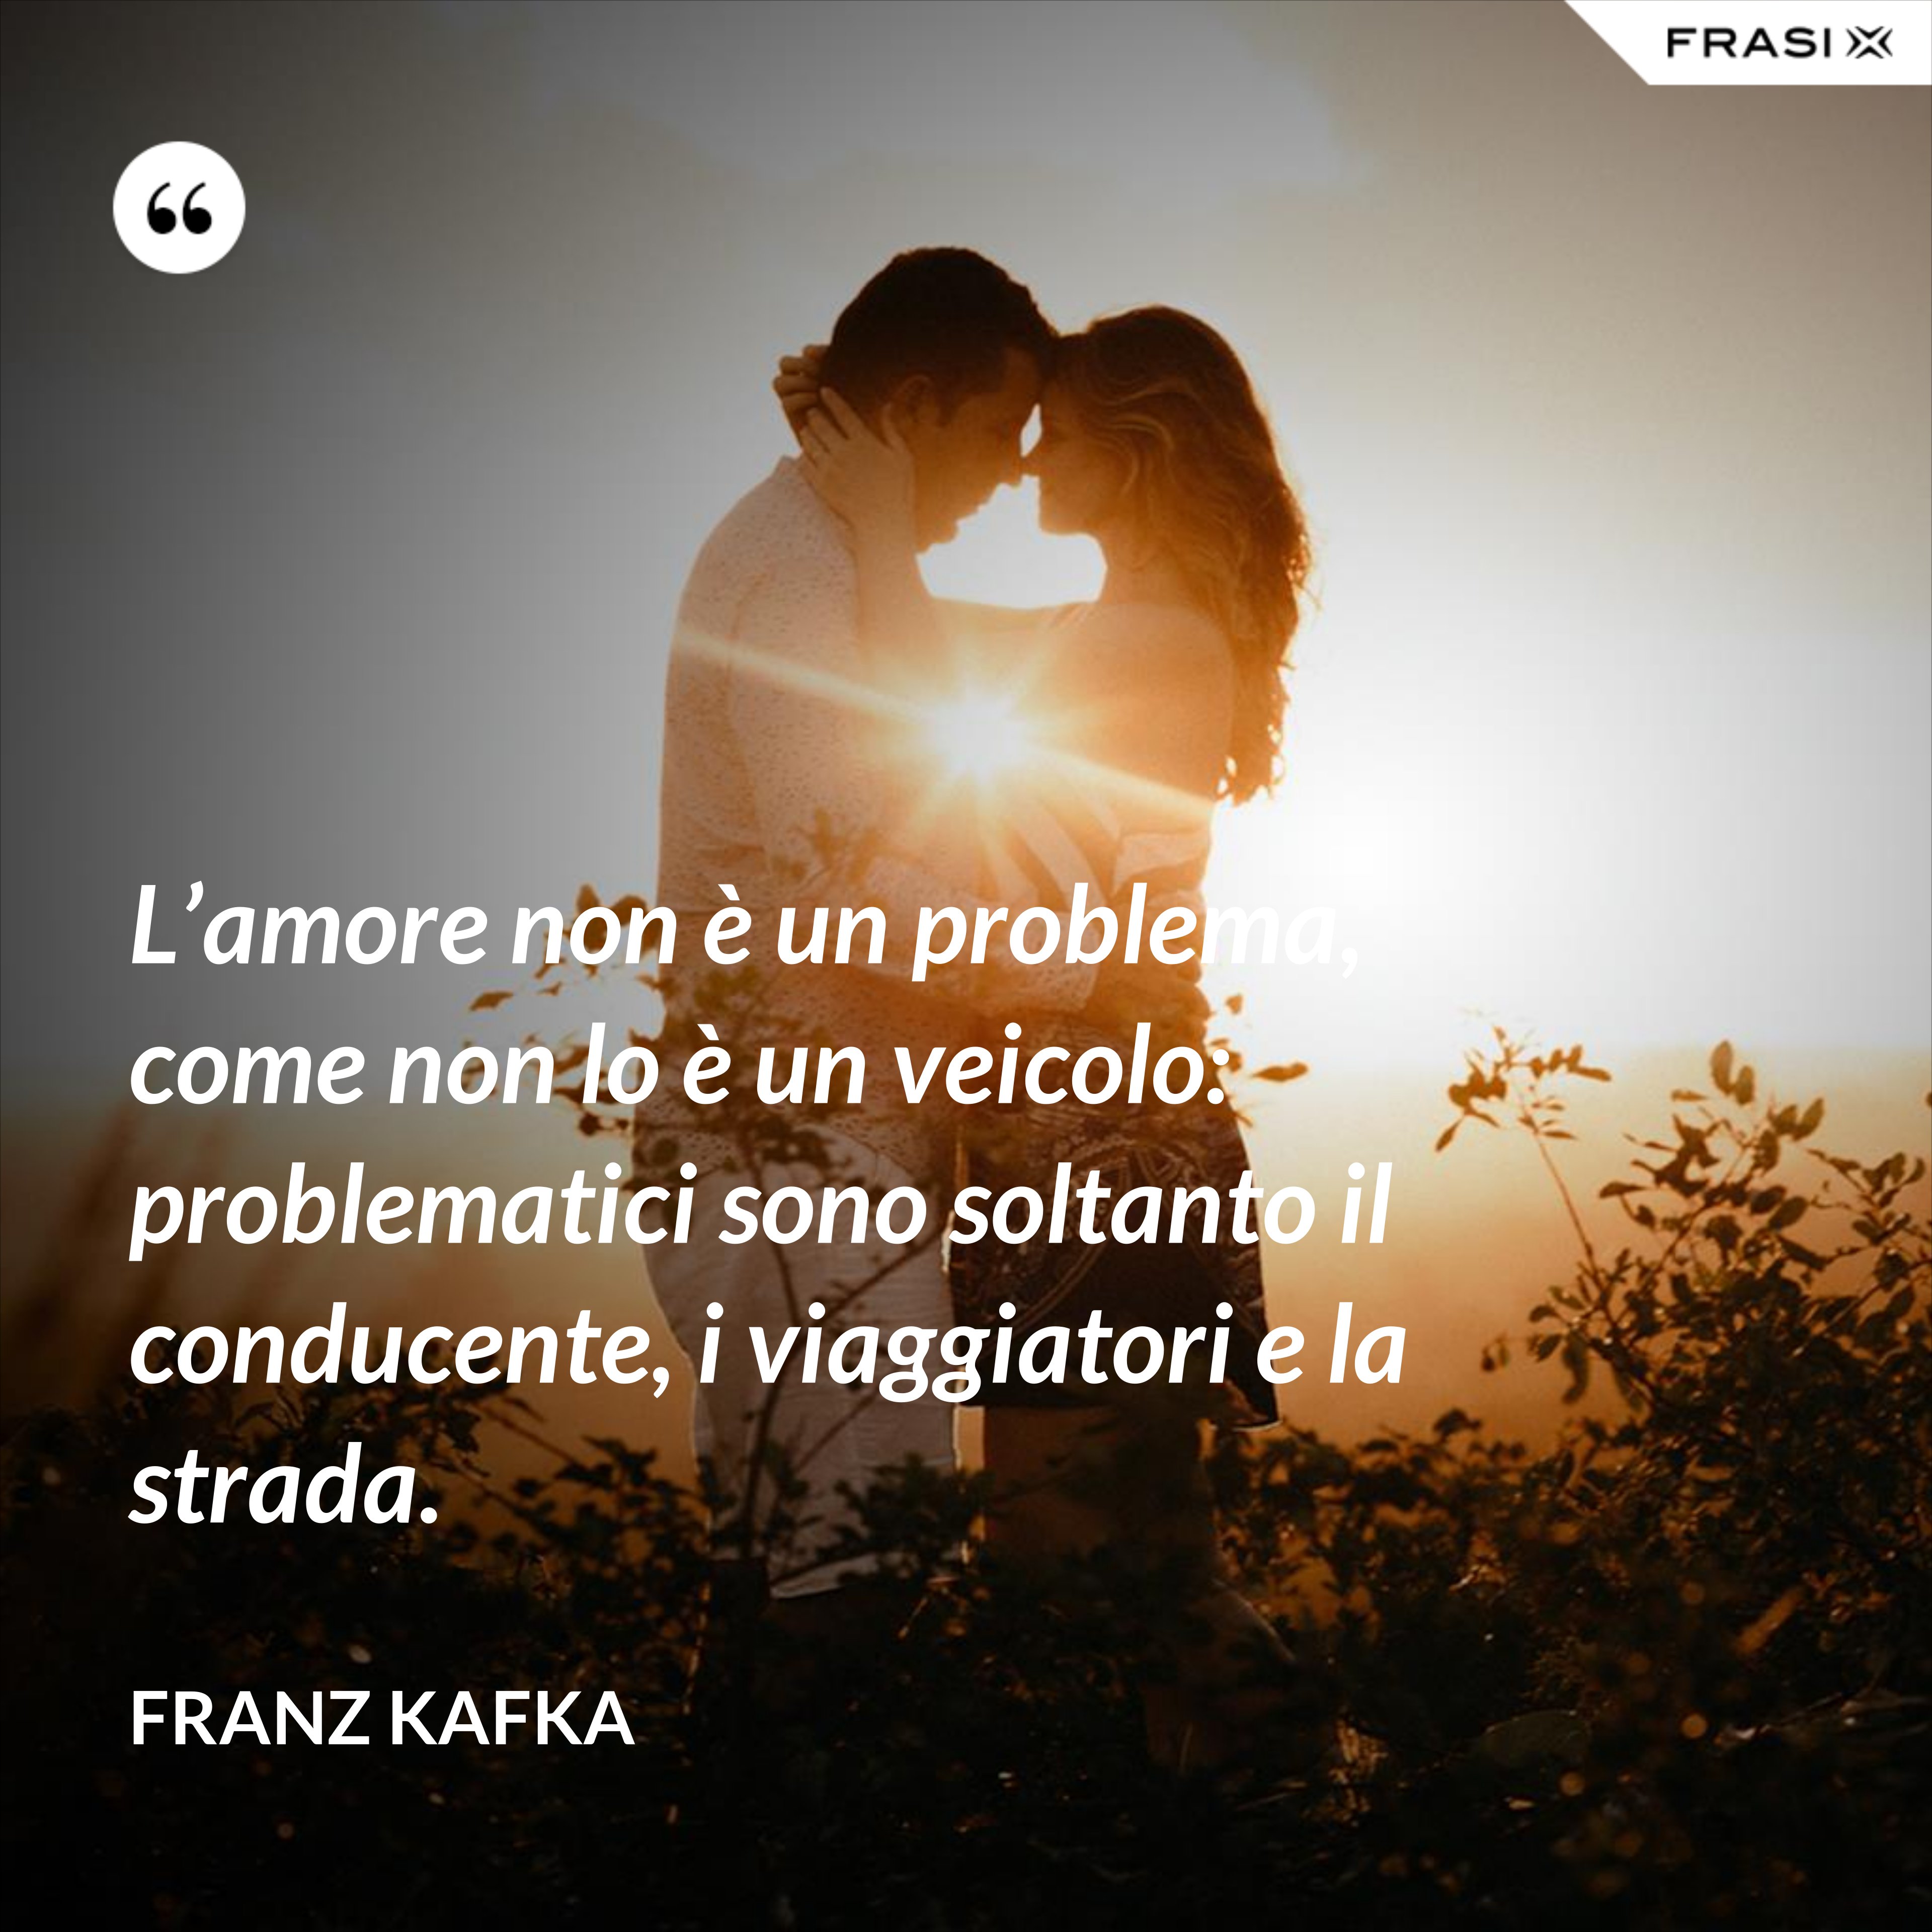 L’amore non è un problema, come non lo è un veicolo: problematici sono soltanto il conducente, i viaggiatori e la strada. - Franz Kafka